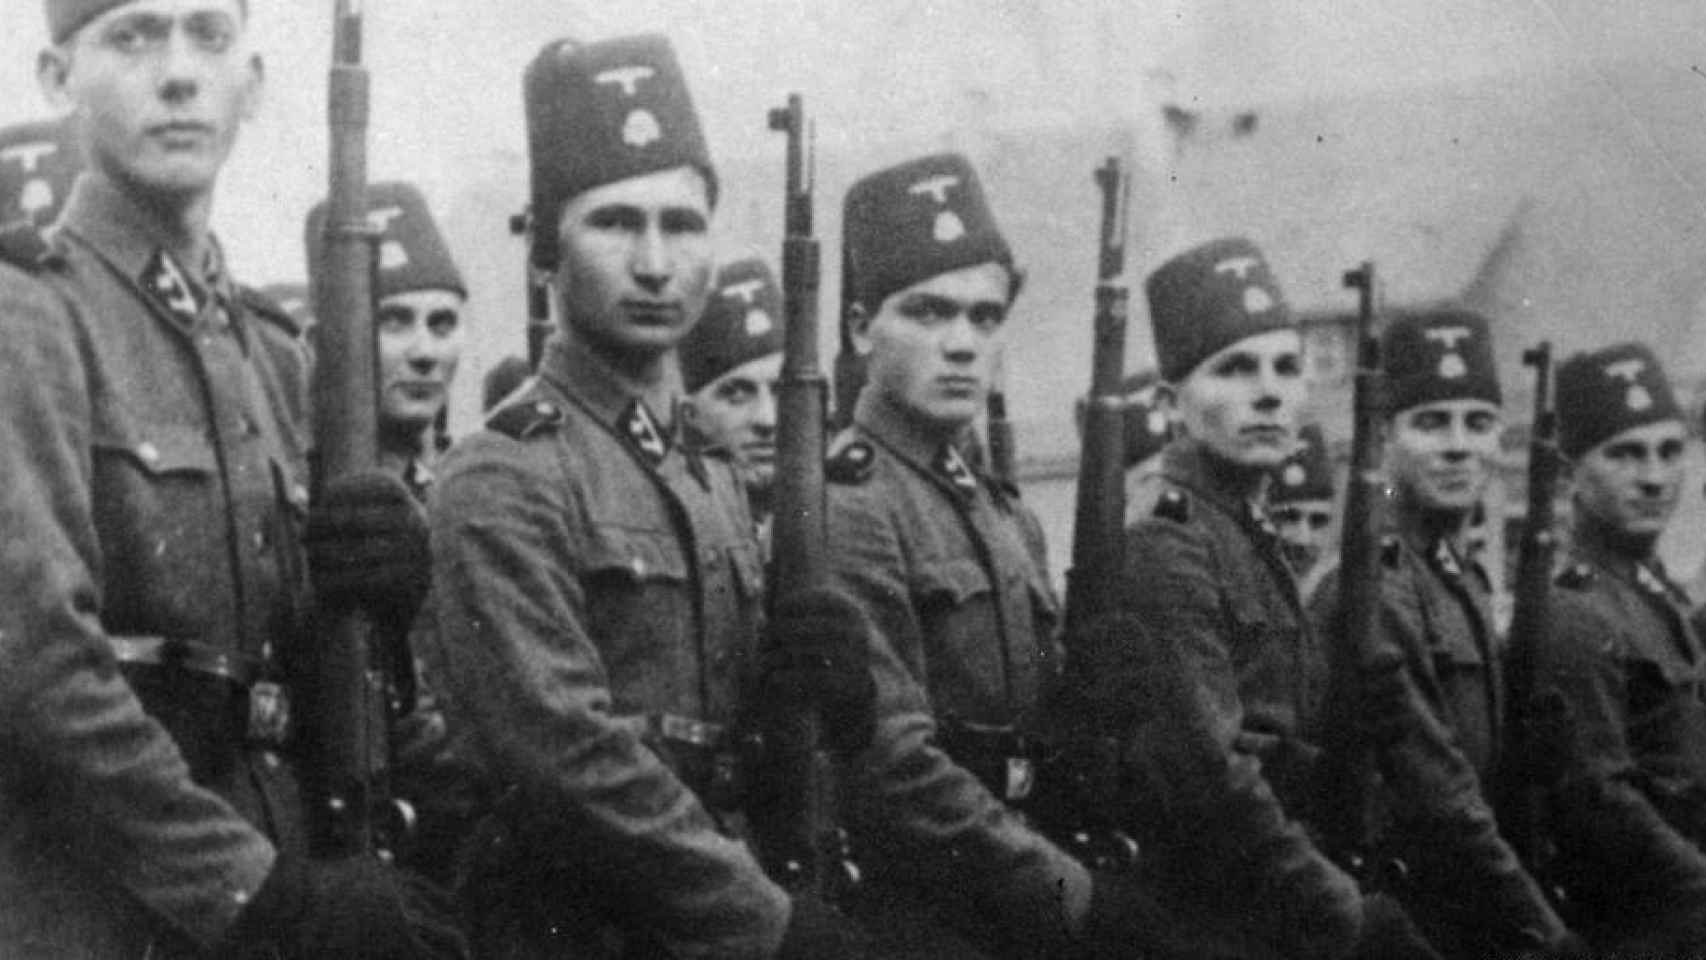 Bosnios musulmanes en la Wehrmacht.